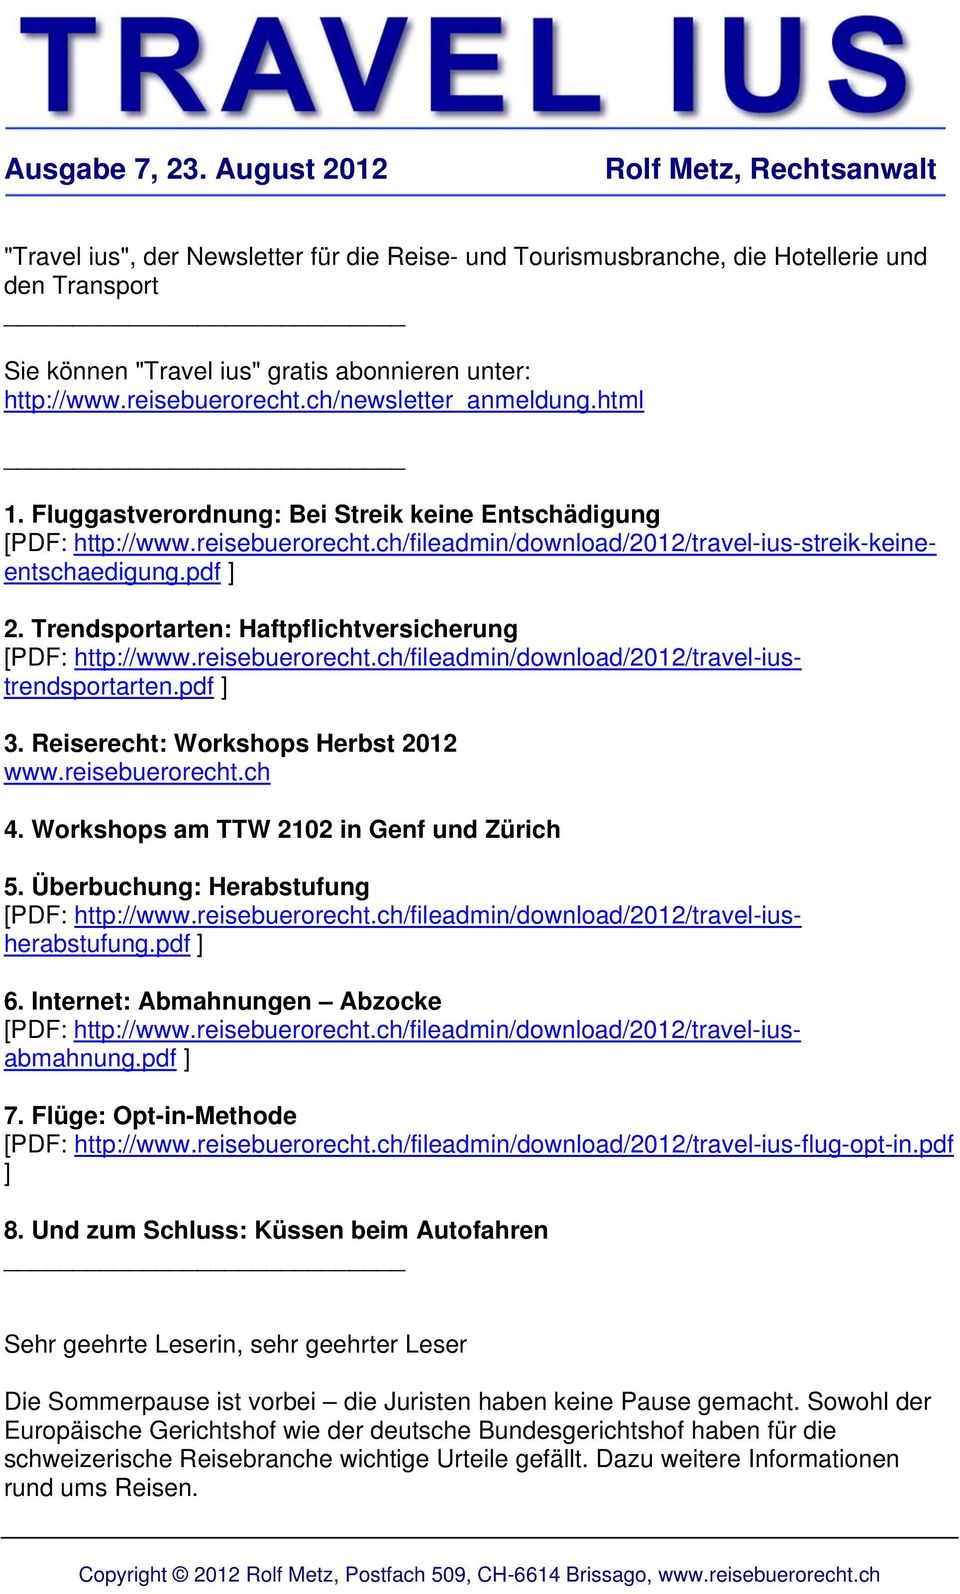 reisebuerorecht.ch/newsletter_anmeldung.html 1. Fluggastverordnung: Bei Streik keine Entschädigung [PDF: http://www.reisebuerorecht.ch/fileadmin/download/2012/travel-ius-streik-keineentschaedigung.